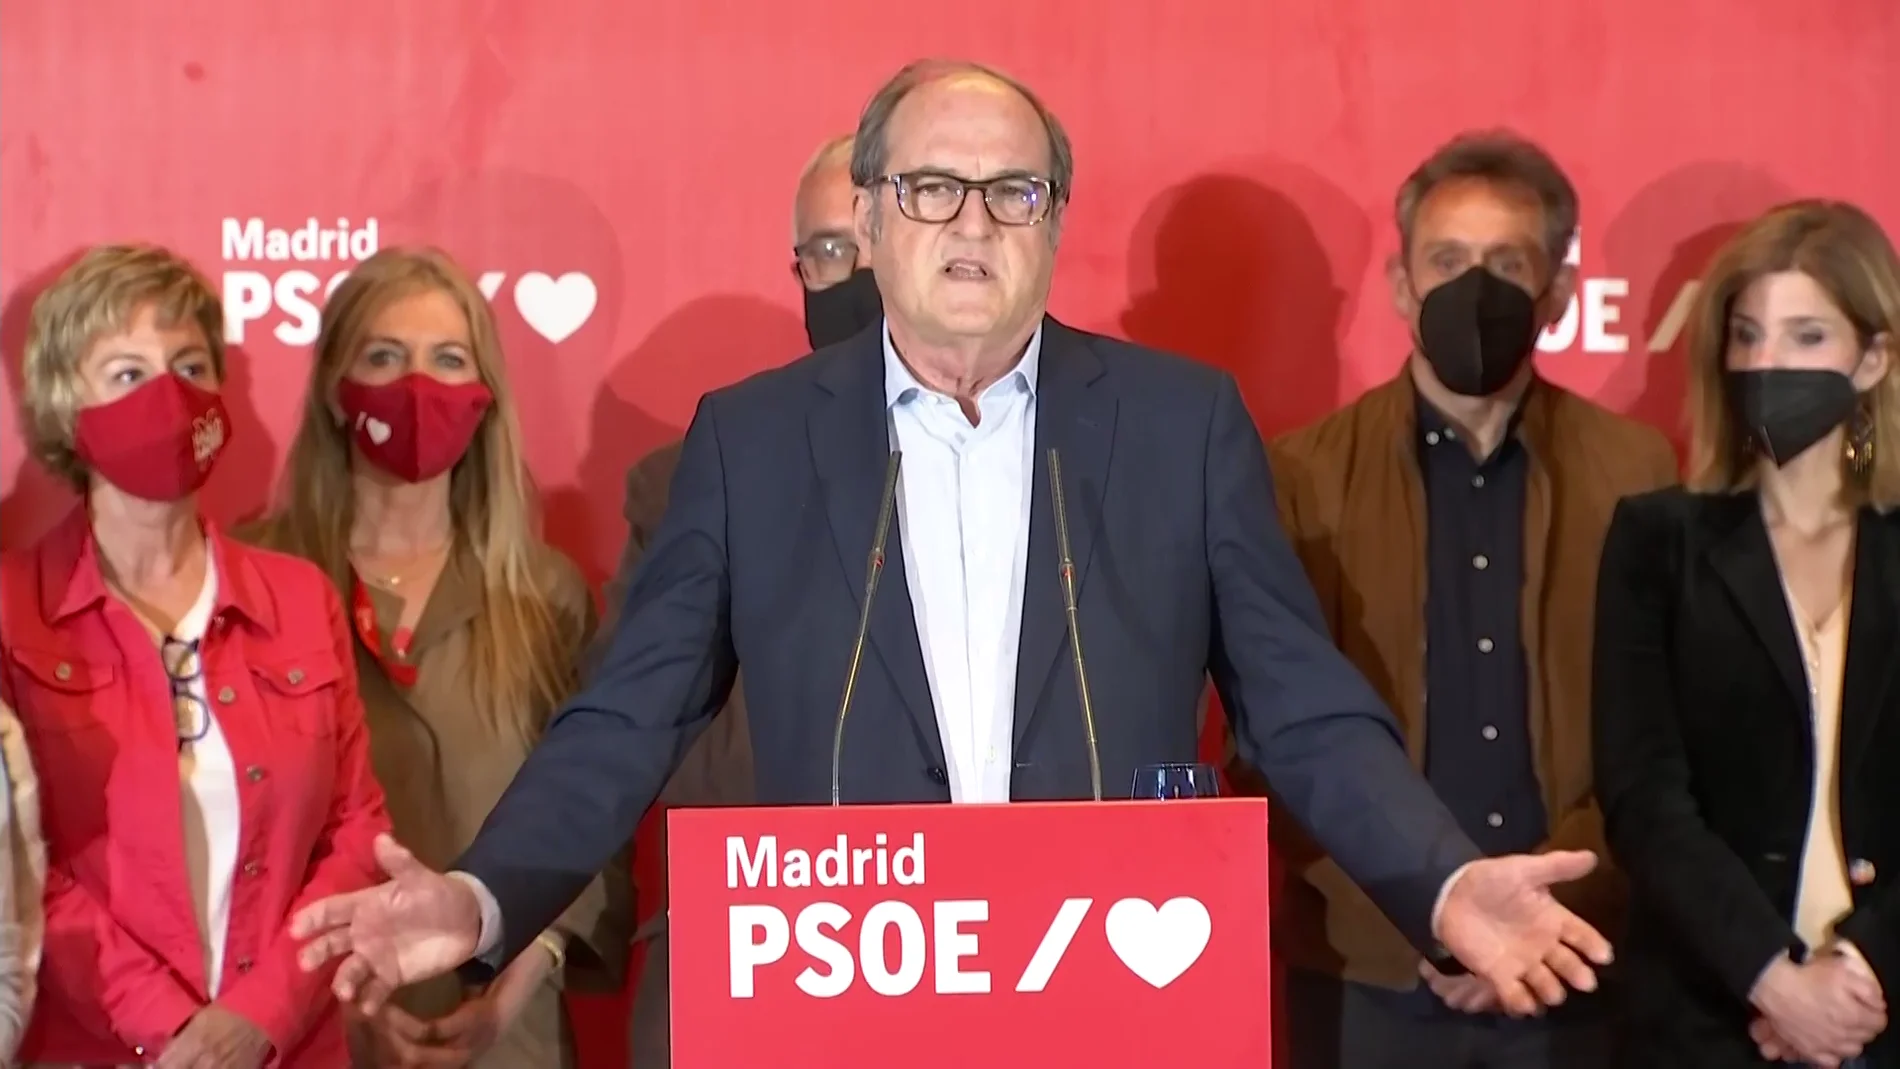 Ángel Gabilondo reconoce los malos datos en las elecciones de Madrid: "Los resultados no son buenos, no lo he logrado" 